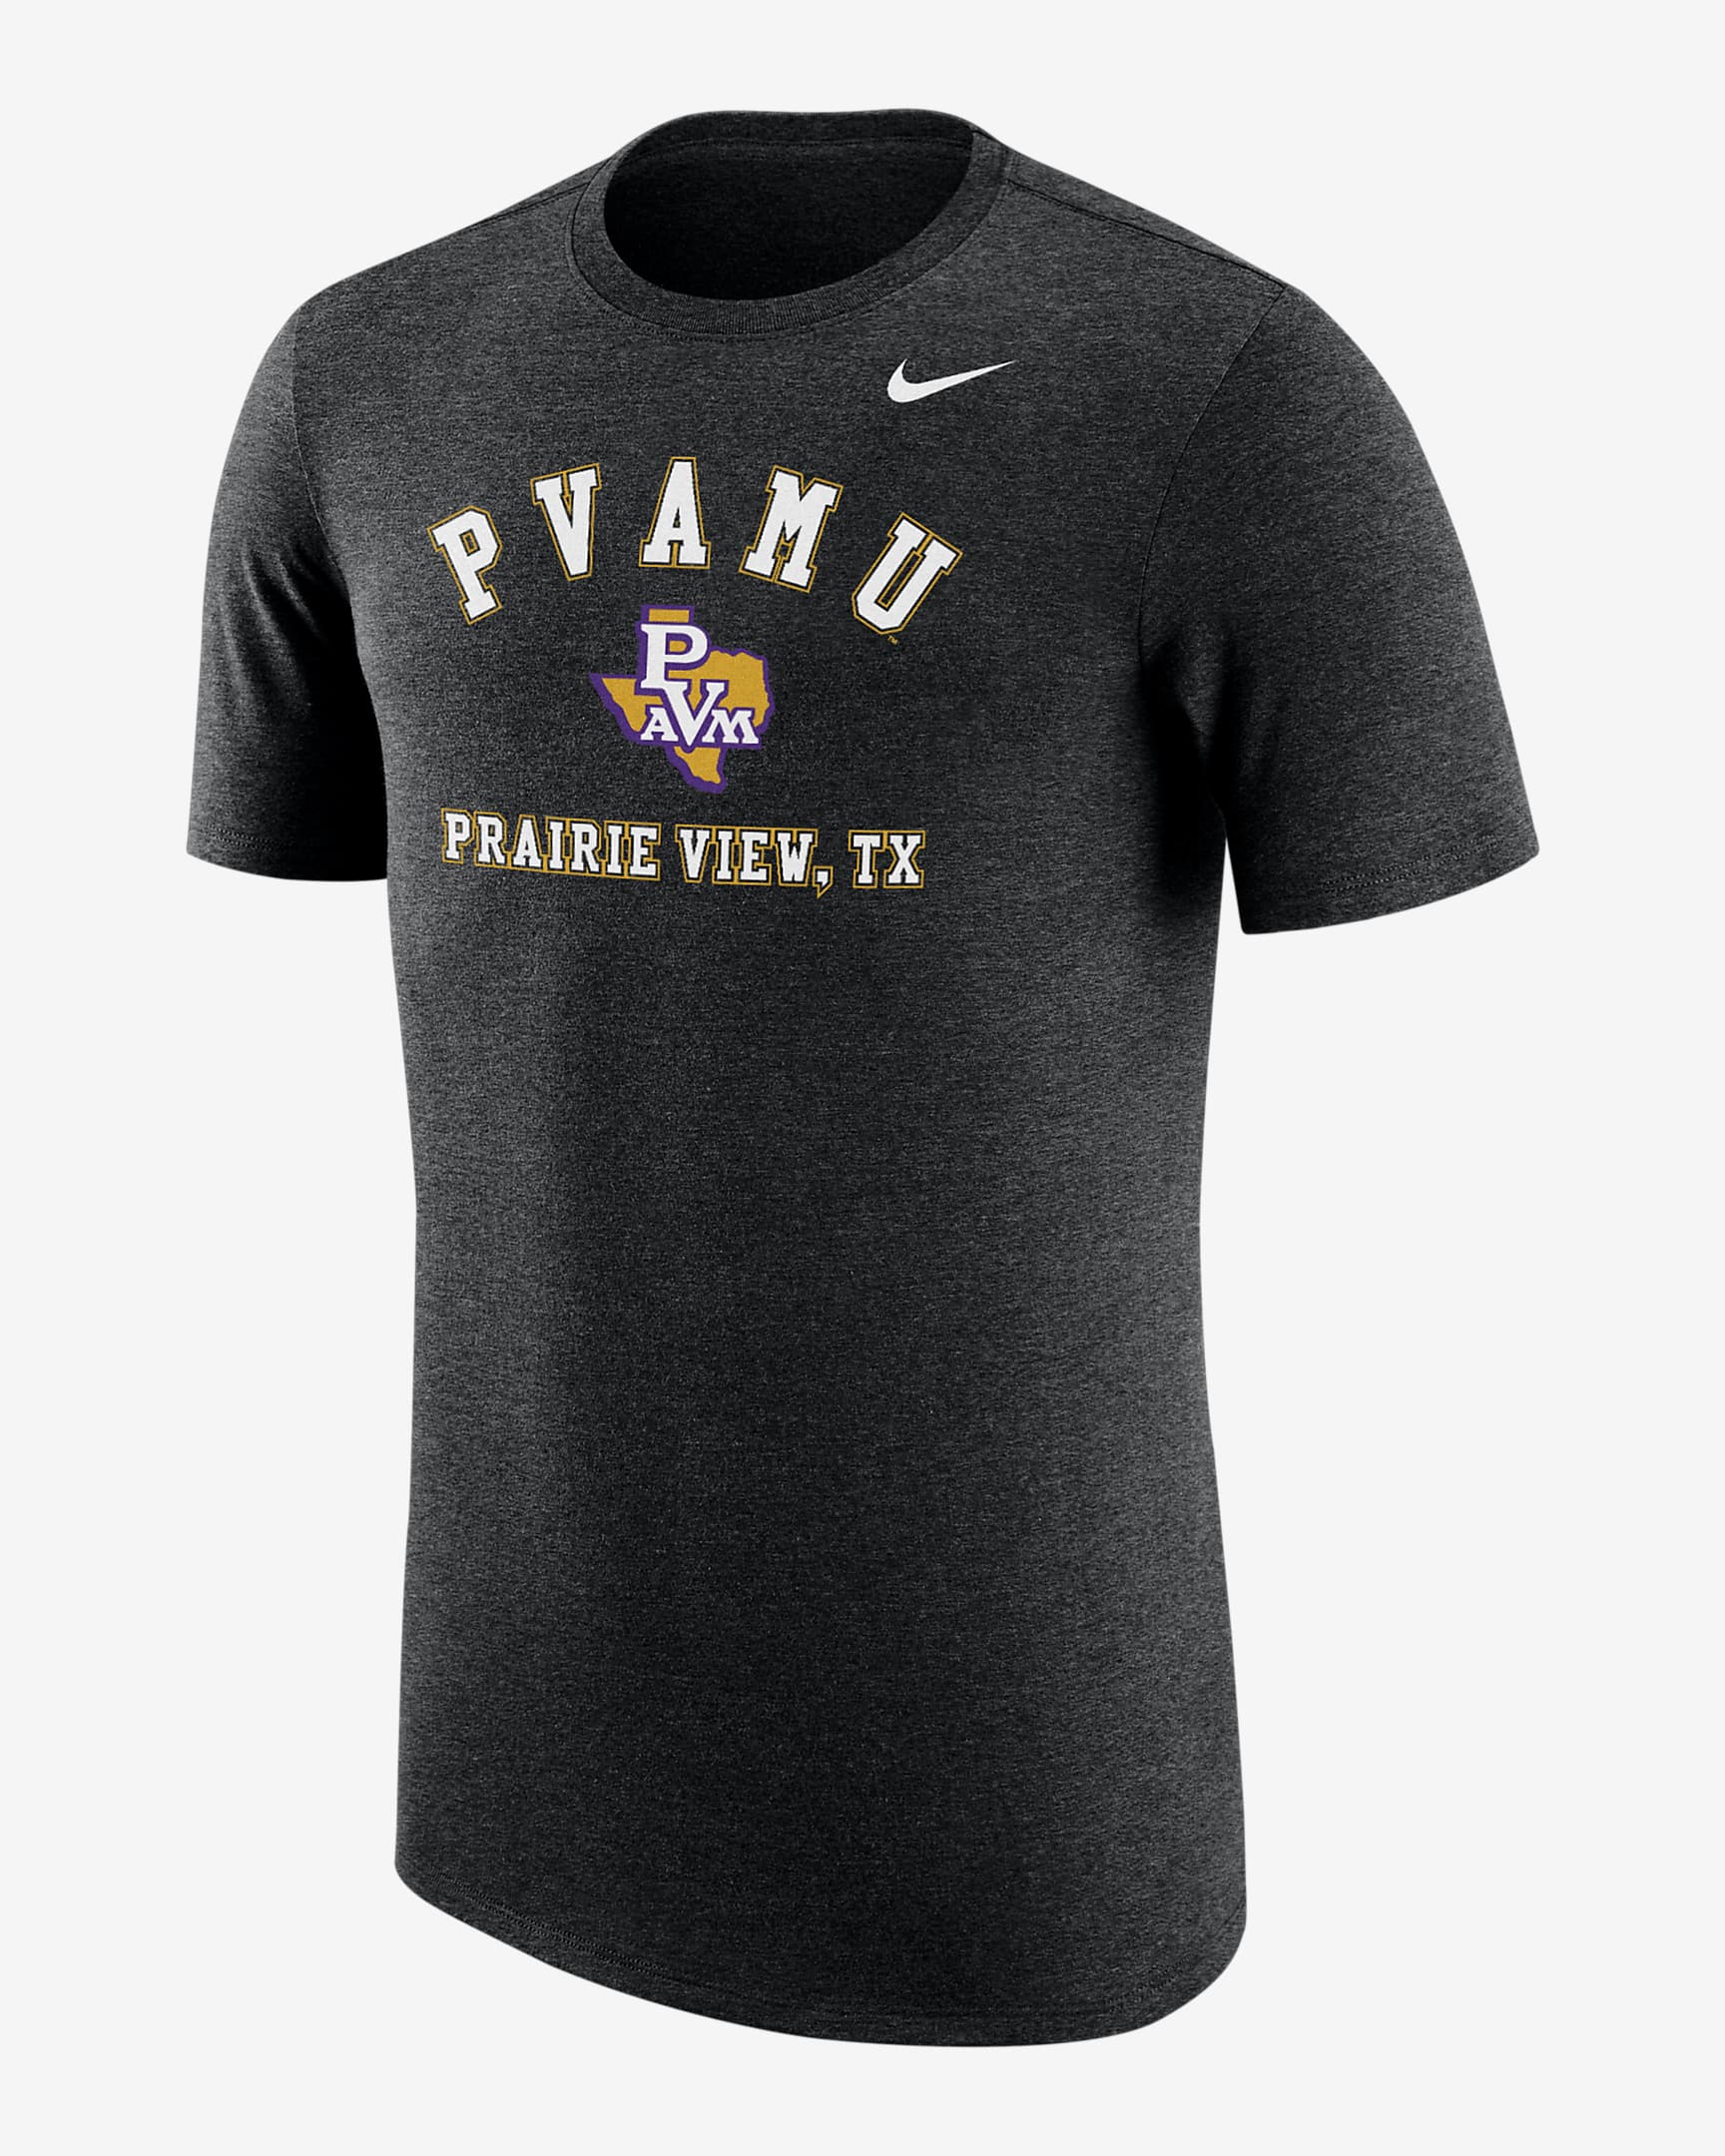 Prairie View A&M Men's Nike College T-Shirt. Nike.com